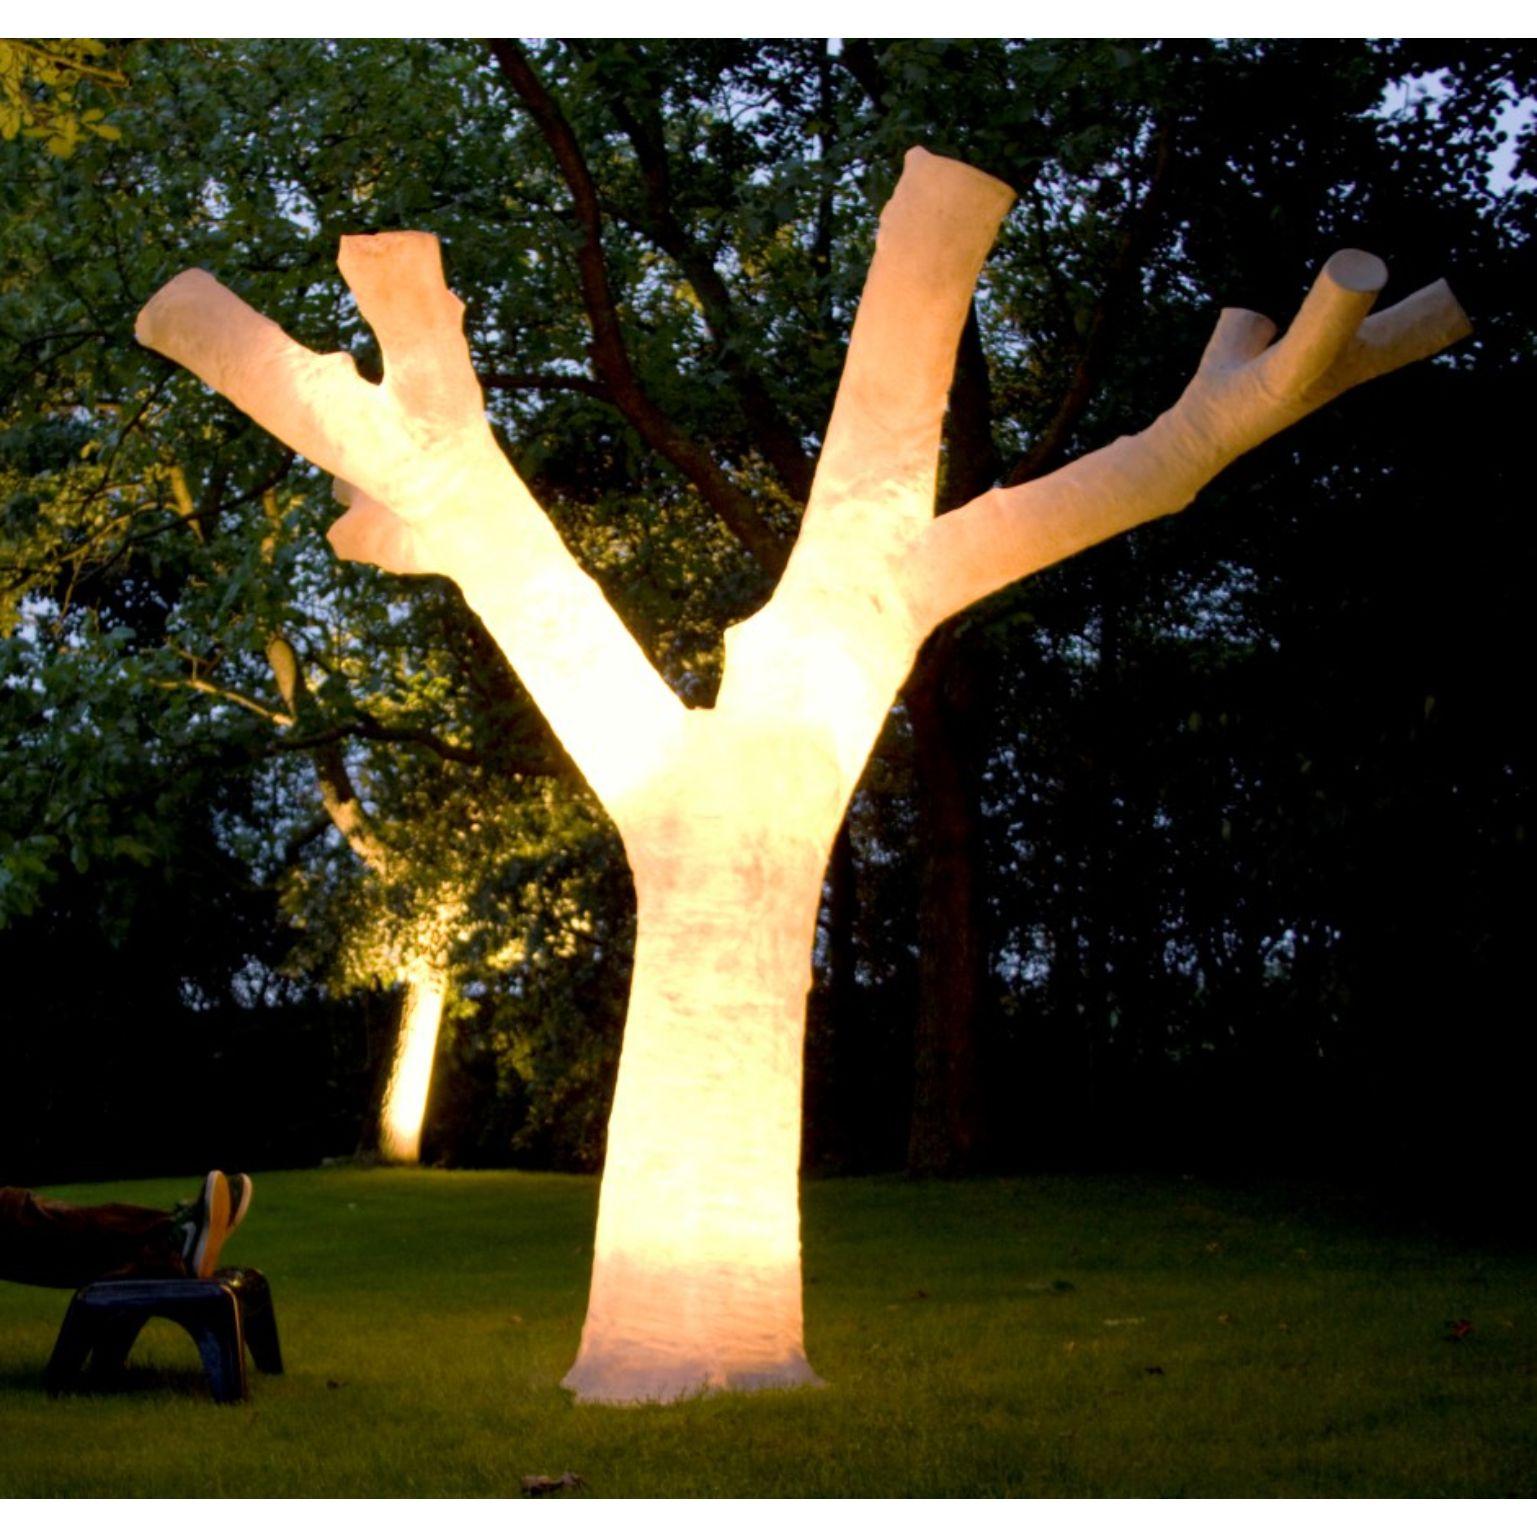 Sculpture lumineuse No Leafs de l'Atelier Haute Cuisine
Pièce unique
Dimensions : 25 x 400 cm (variable)
Matériaux : Fibre de verre

Toutes nos lampes peuvent être câblées en fonction de chaque pays. Si elle est vendue aux États-Unis, elle sera